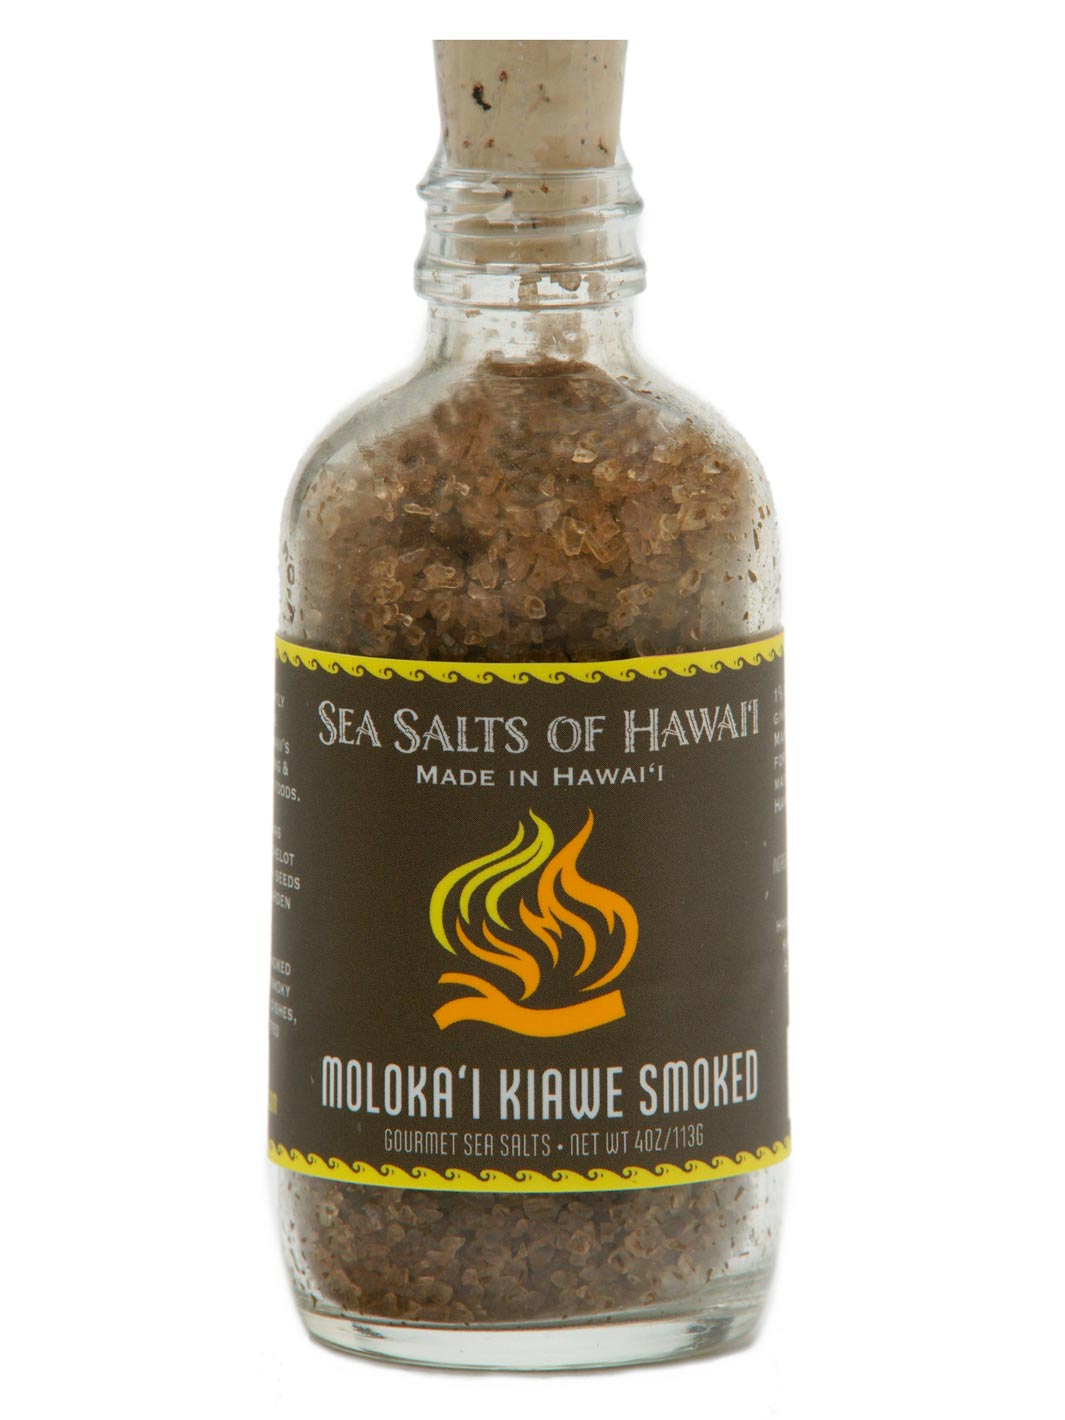 Kiawe Smoked Hawaiian Salt Glass Bottle 4oz